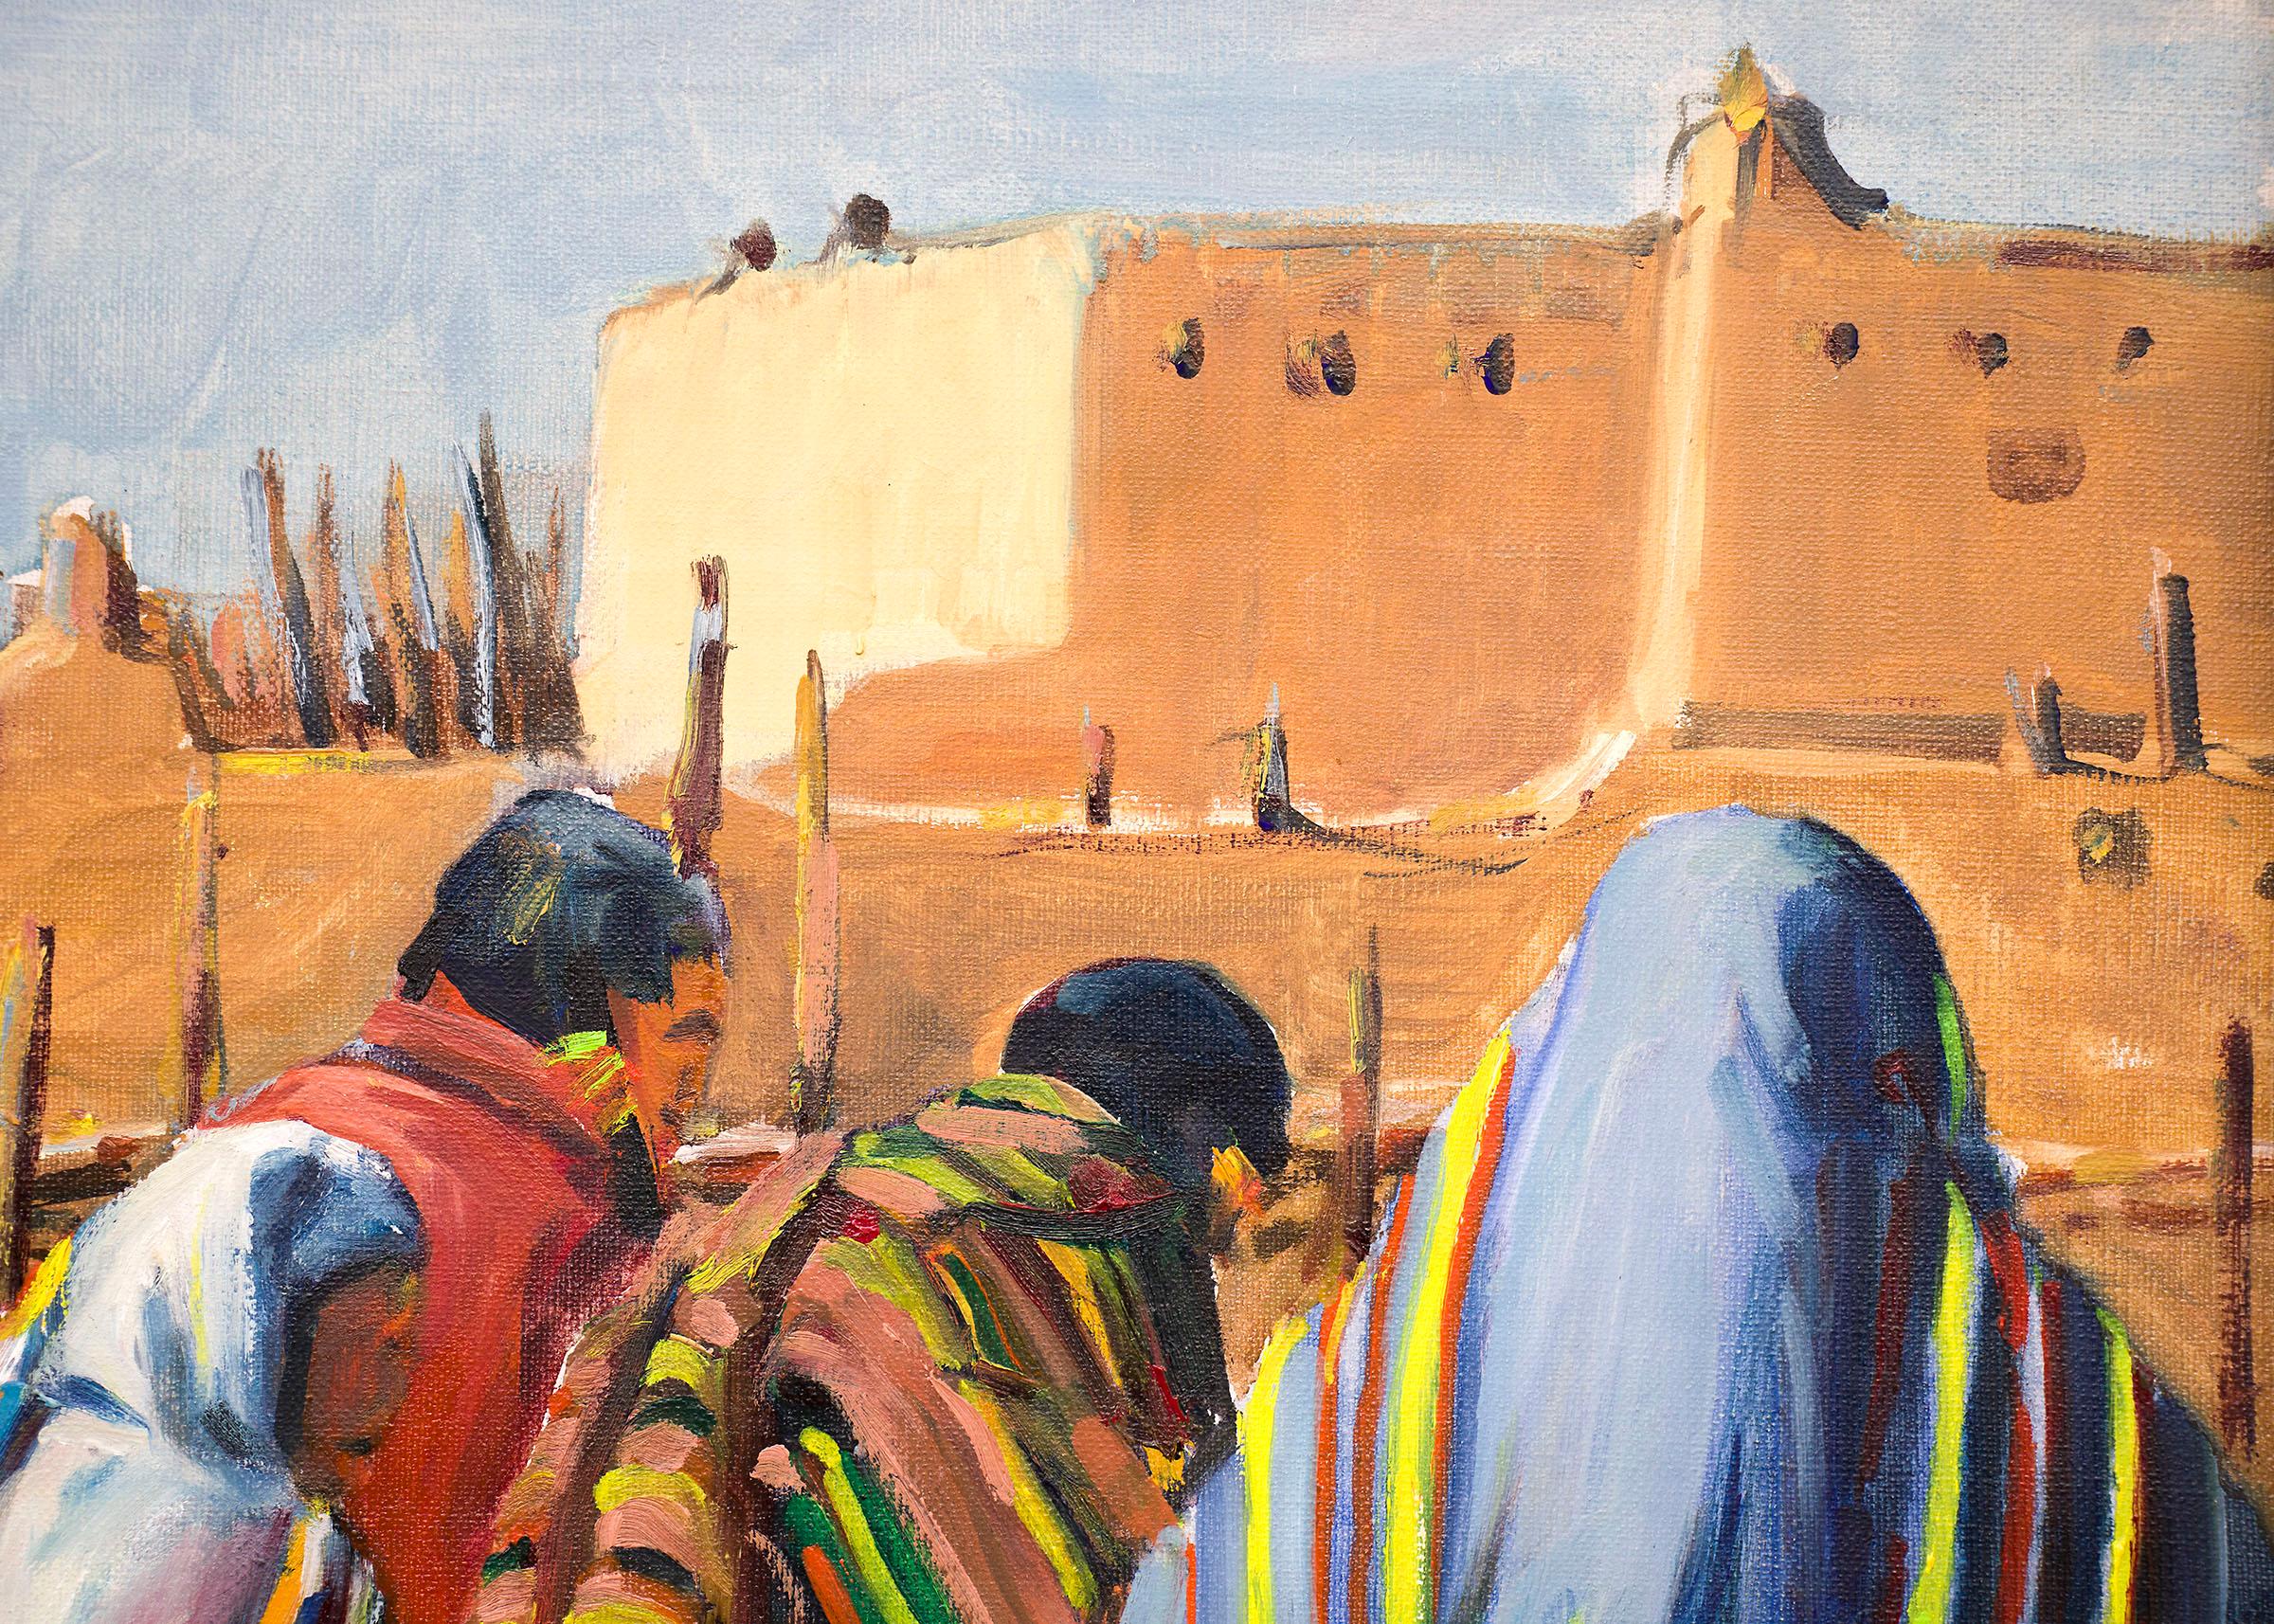 Peinture à l'huile - Figures amérindiennes de Taos Pueblo, Nouveau-Mexique du Sud-Ouest - Marron Figurative Painting par Wolfgang Pogzeba